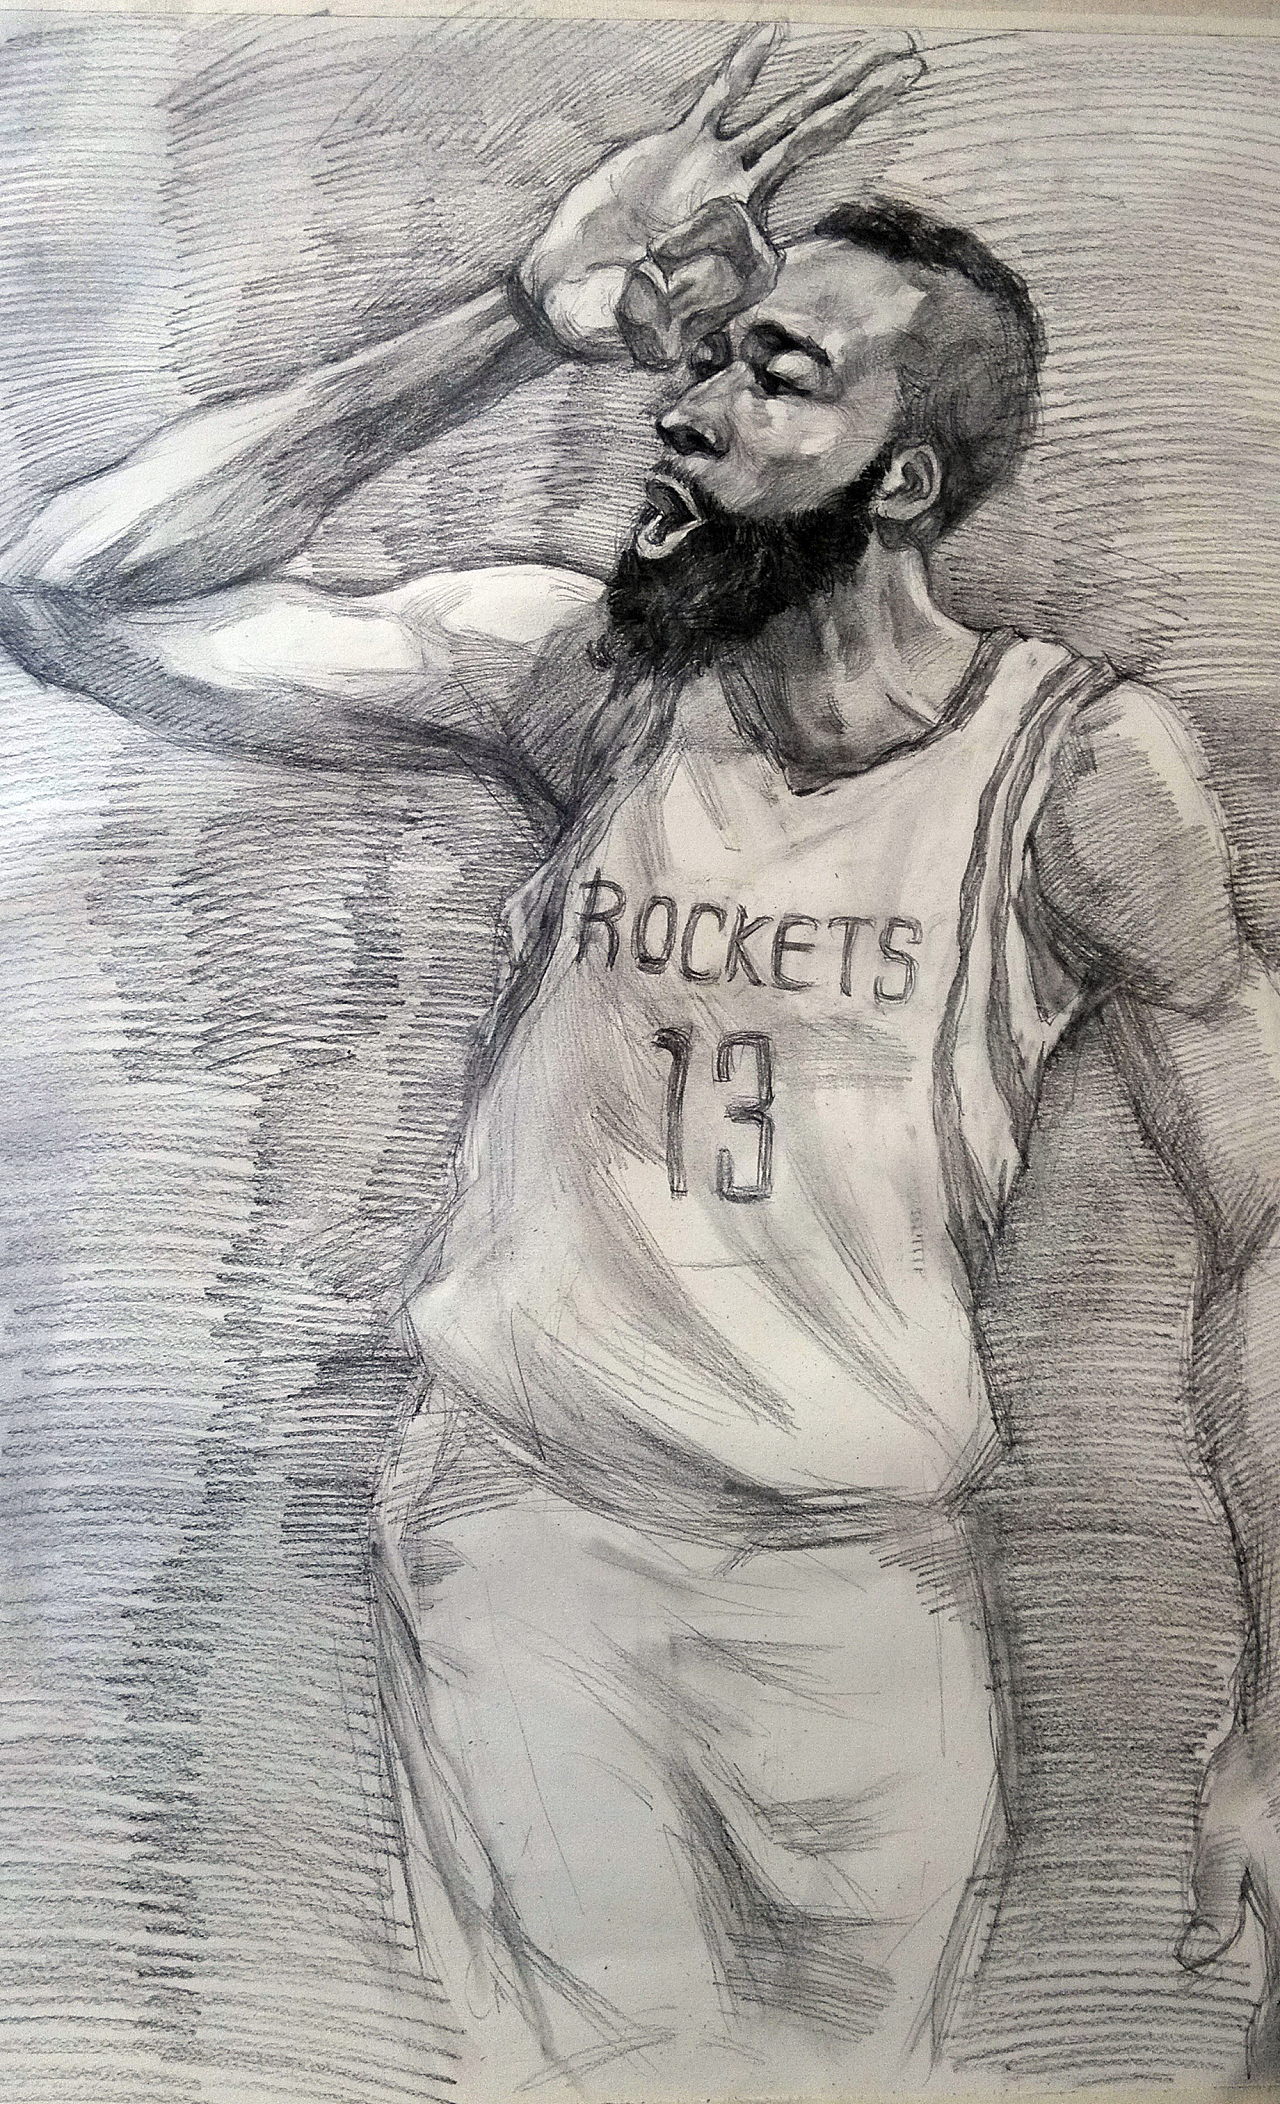 素描篮球人物图片